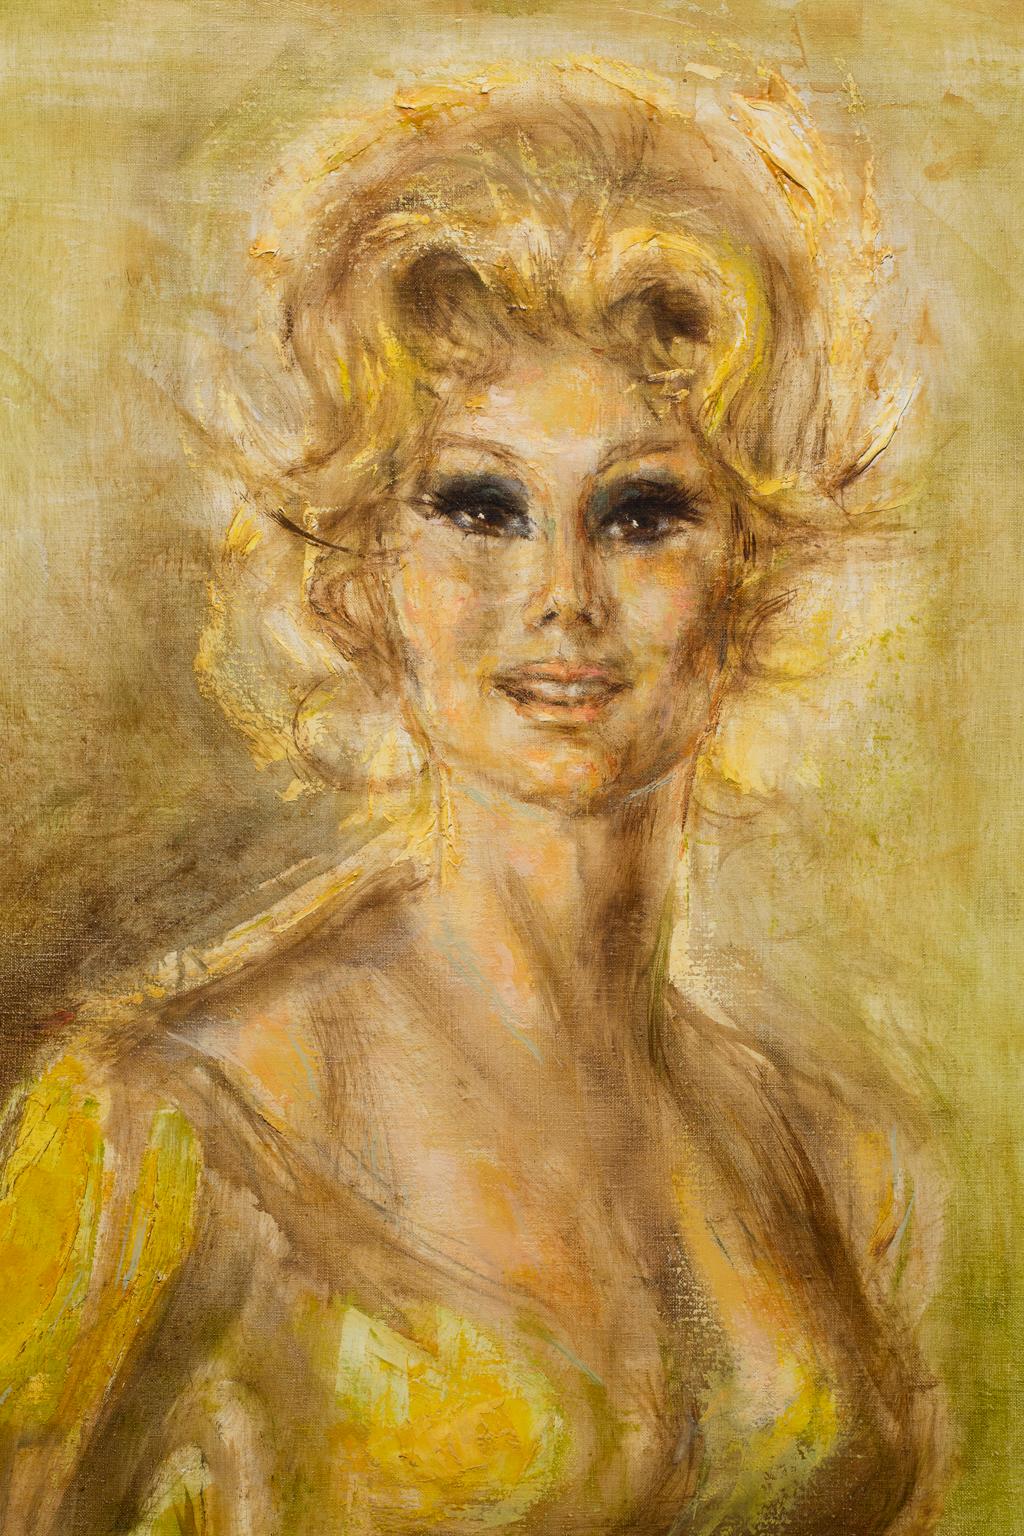 „Eva Gabor“ Weibliches Porträt, goldene Farben, Filmstar – Painting von Artis Lane